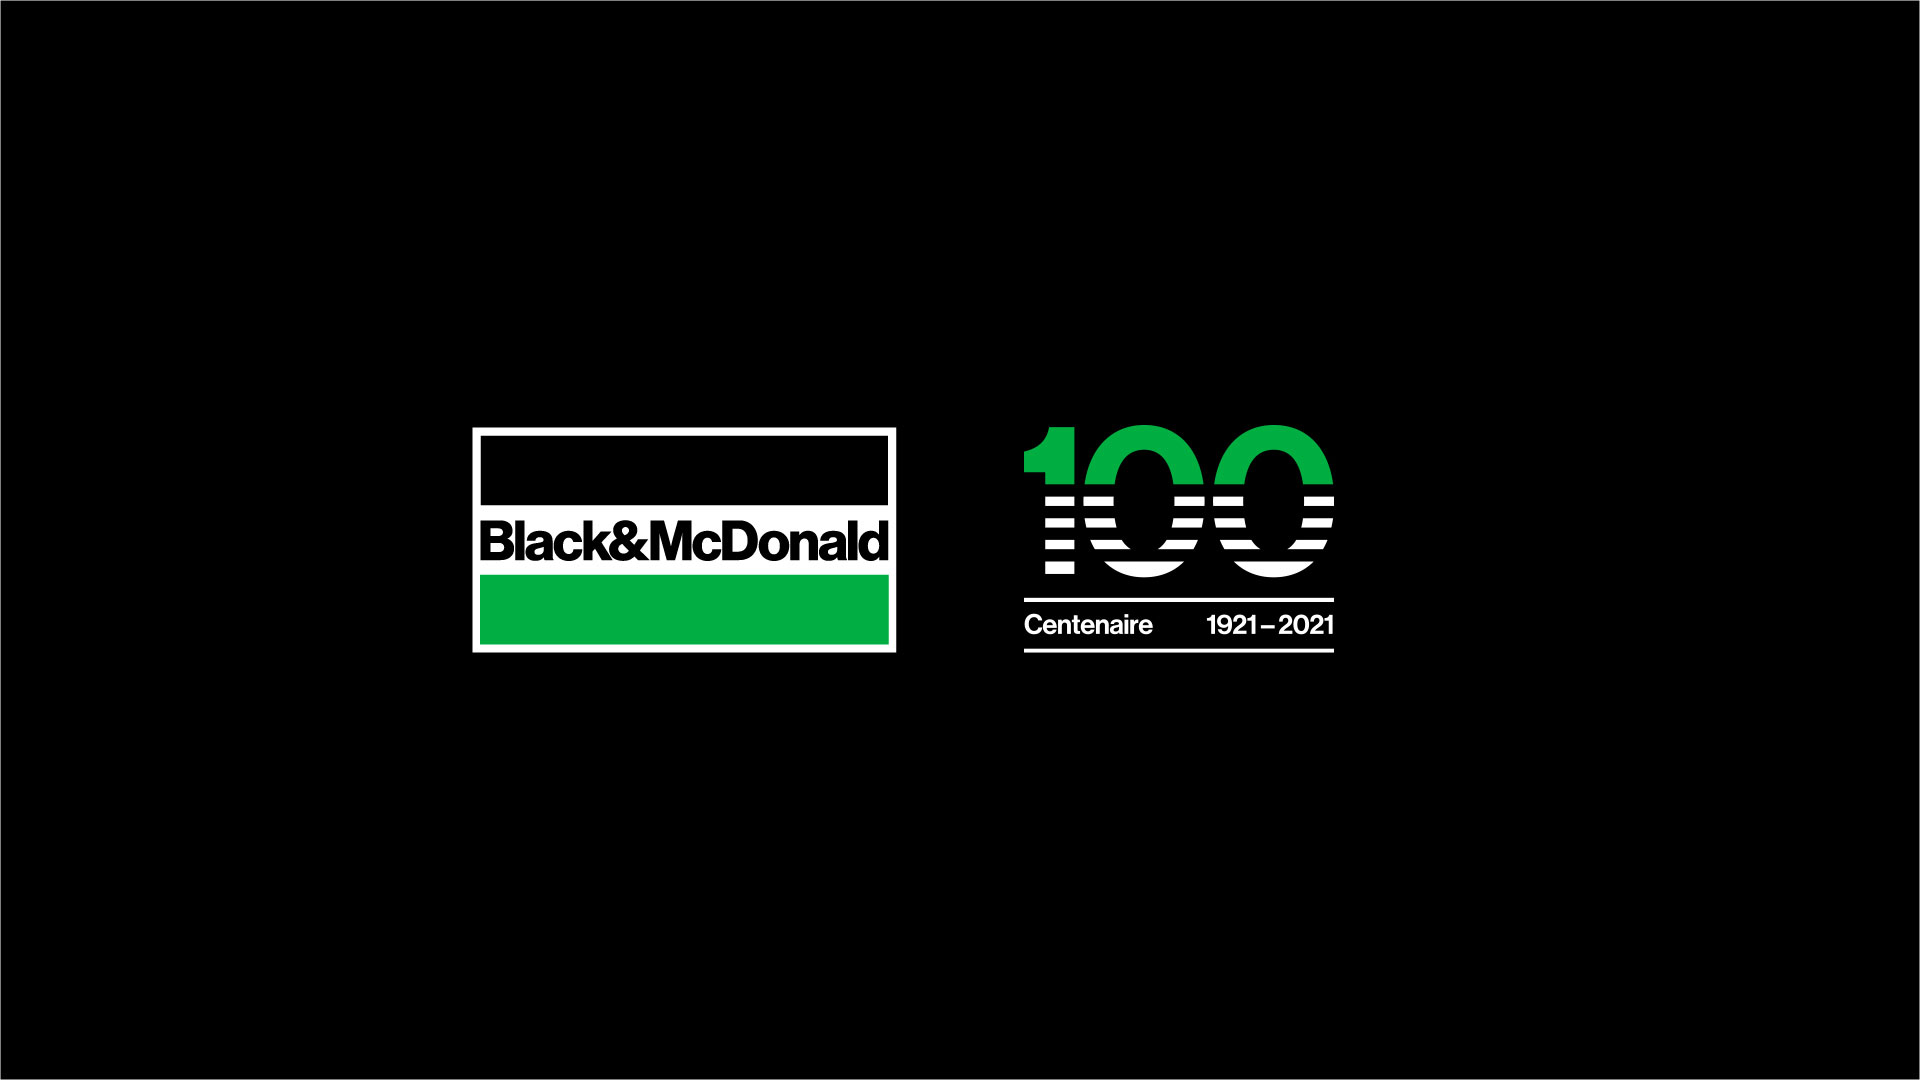 Logos Black & McDonald et Centennial sur fond noir